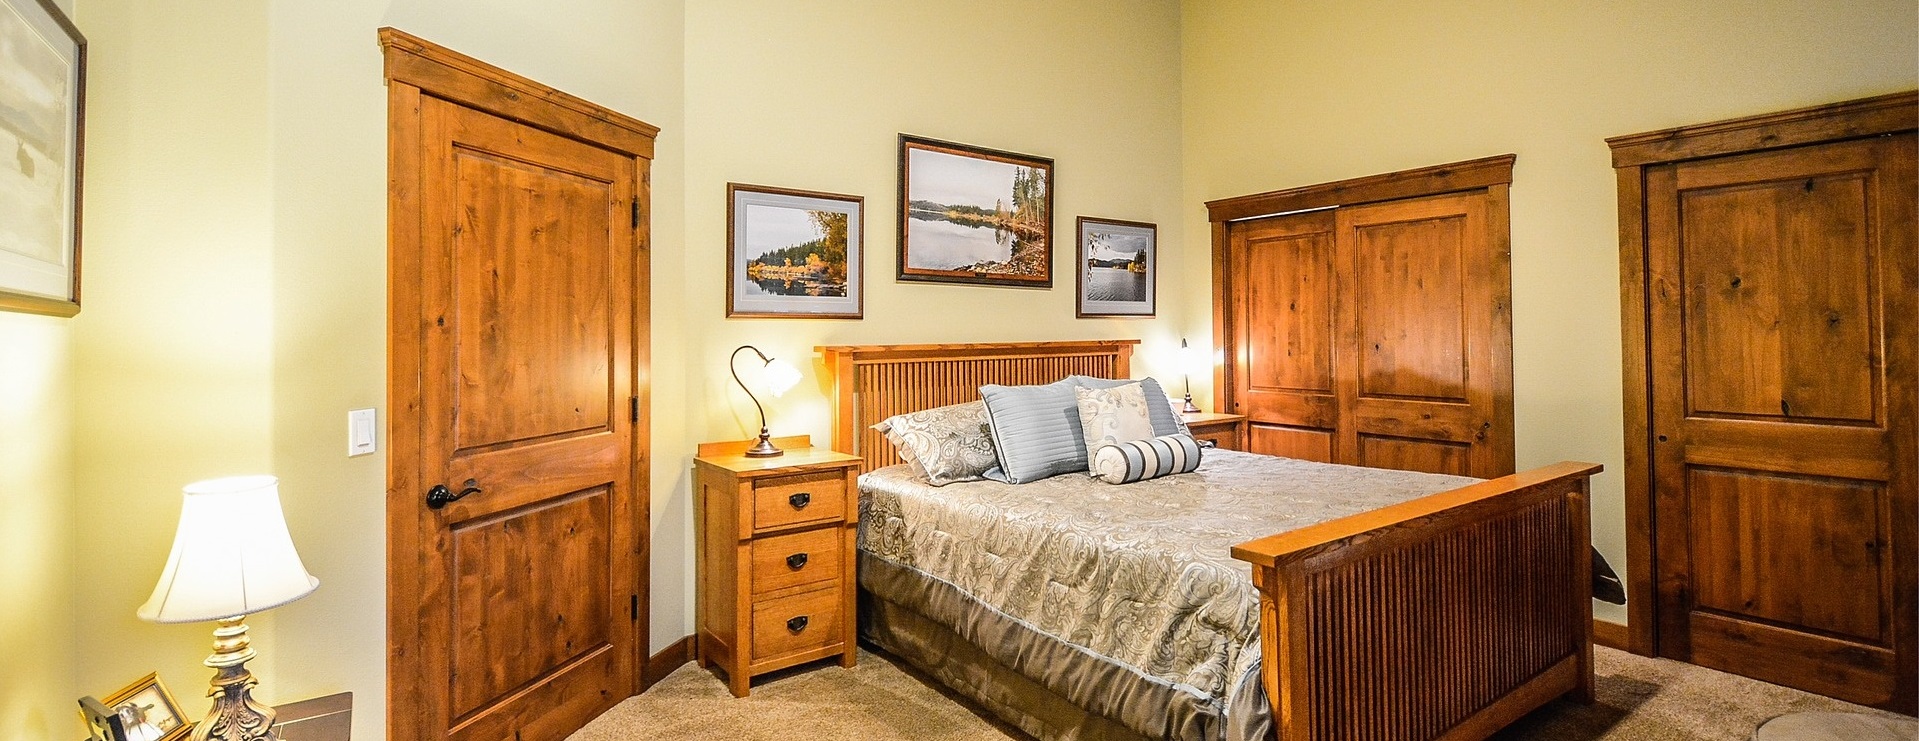 Rustic, well-lit bedroom